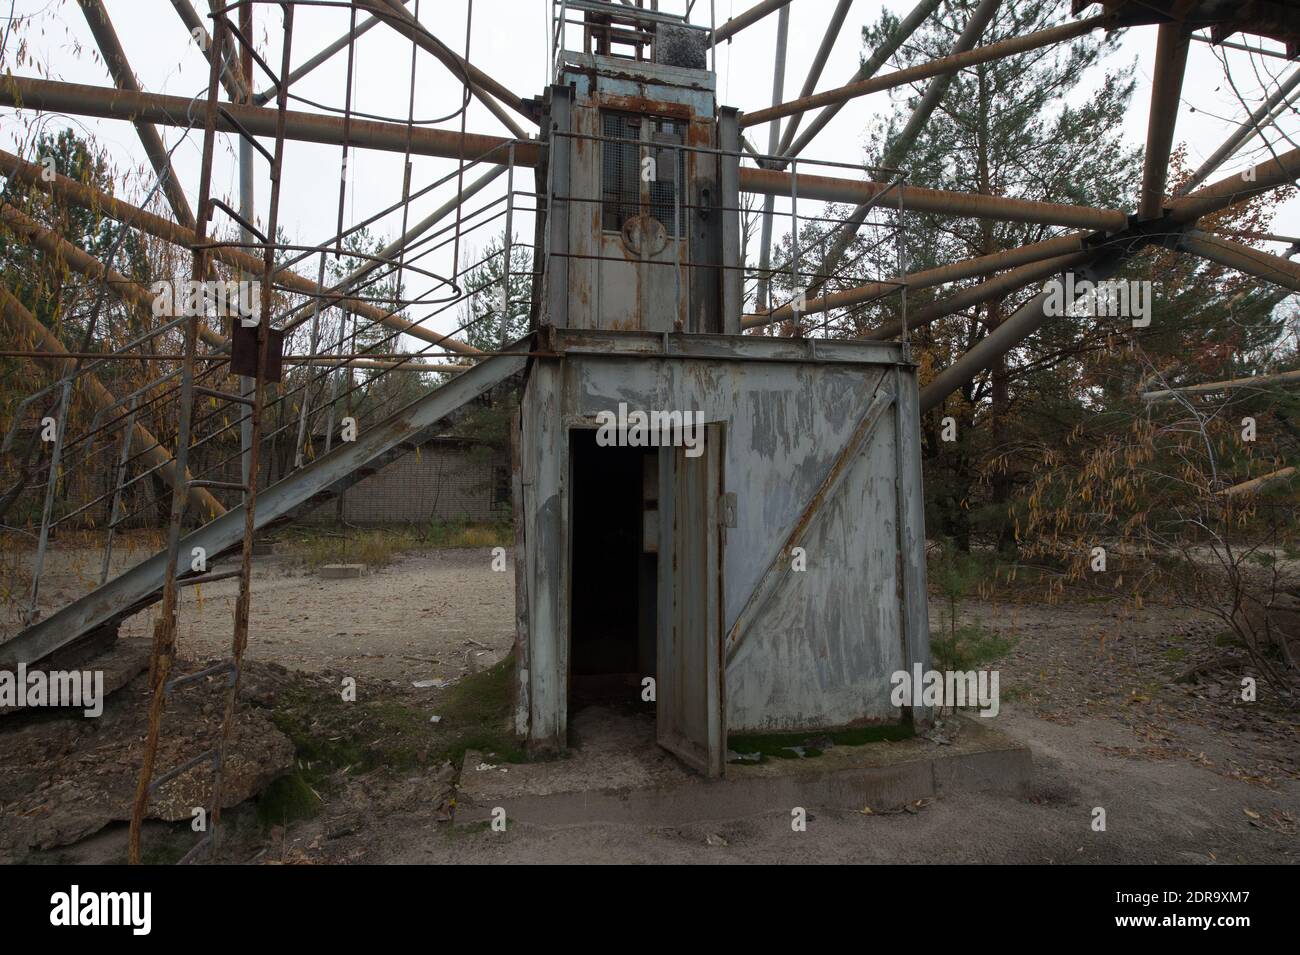 Das Duga-1-Array, ein OTC-Radarsystem, das als Teil des sowjetischen ABM-Frühwarnnetzes in der Nähe von Tschernobyl eingesetzt wird. Tschernobyl im November 2015. Die Tschernobyl-Katastrophe (auch als Tschernobyl-Unfall oder einfach nur Tschernobyl bezeichnet) war ein katastrophaler nuklearer Unfall, der sich am 26. April 1986 im Kernkraftwerk Tschernobyl in der Stadt Pripyat in der Ukraine ereignete (damals offiziell die ukrainische SSR), Die unter der direkten Zuständigkeit der zentralen Behörden der Sowjetunion stand. Bei einer Explosion und einem Brand wurden große Mengen radioaktiver Partikel in die Atmosphäre freigesetzt. Stockfoto